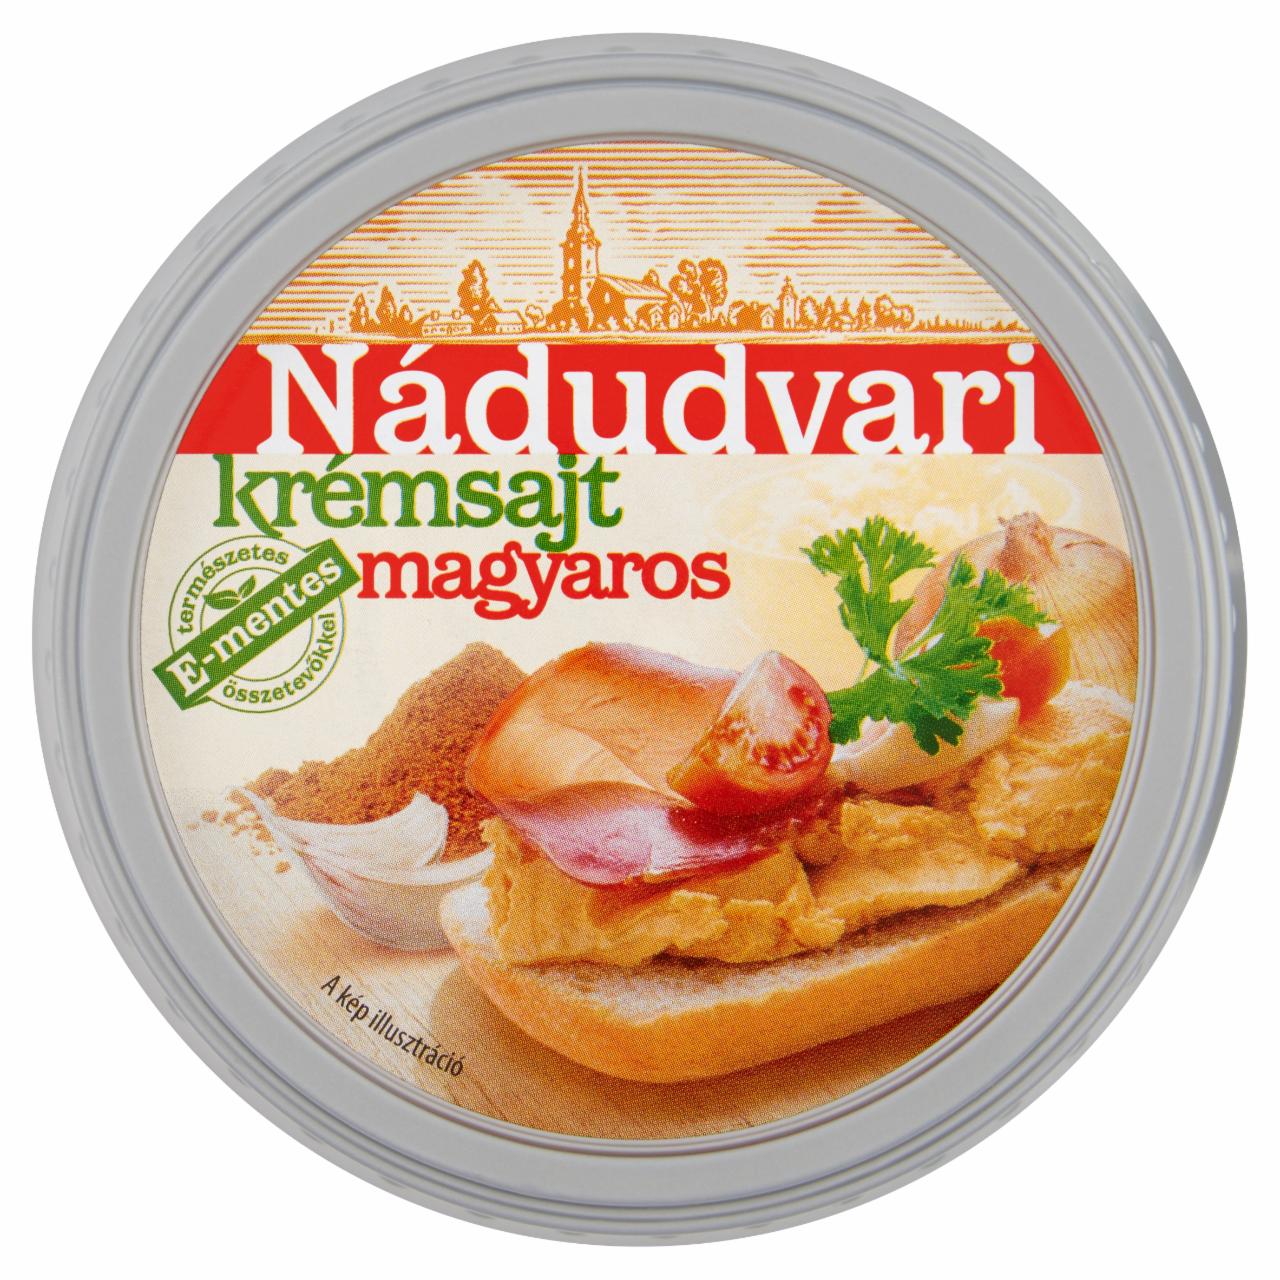 Képek - Nádudvari magyaros krémsajt 150 g